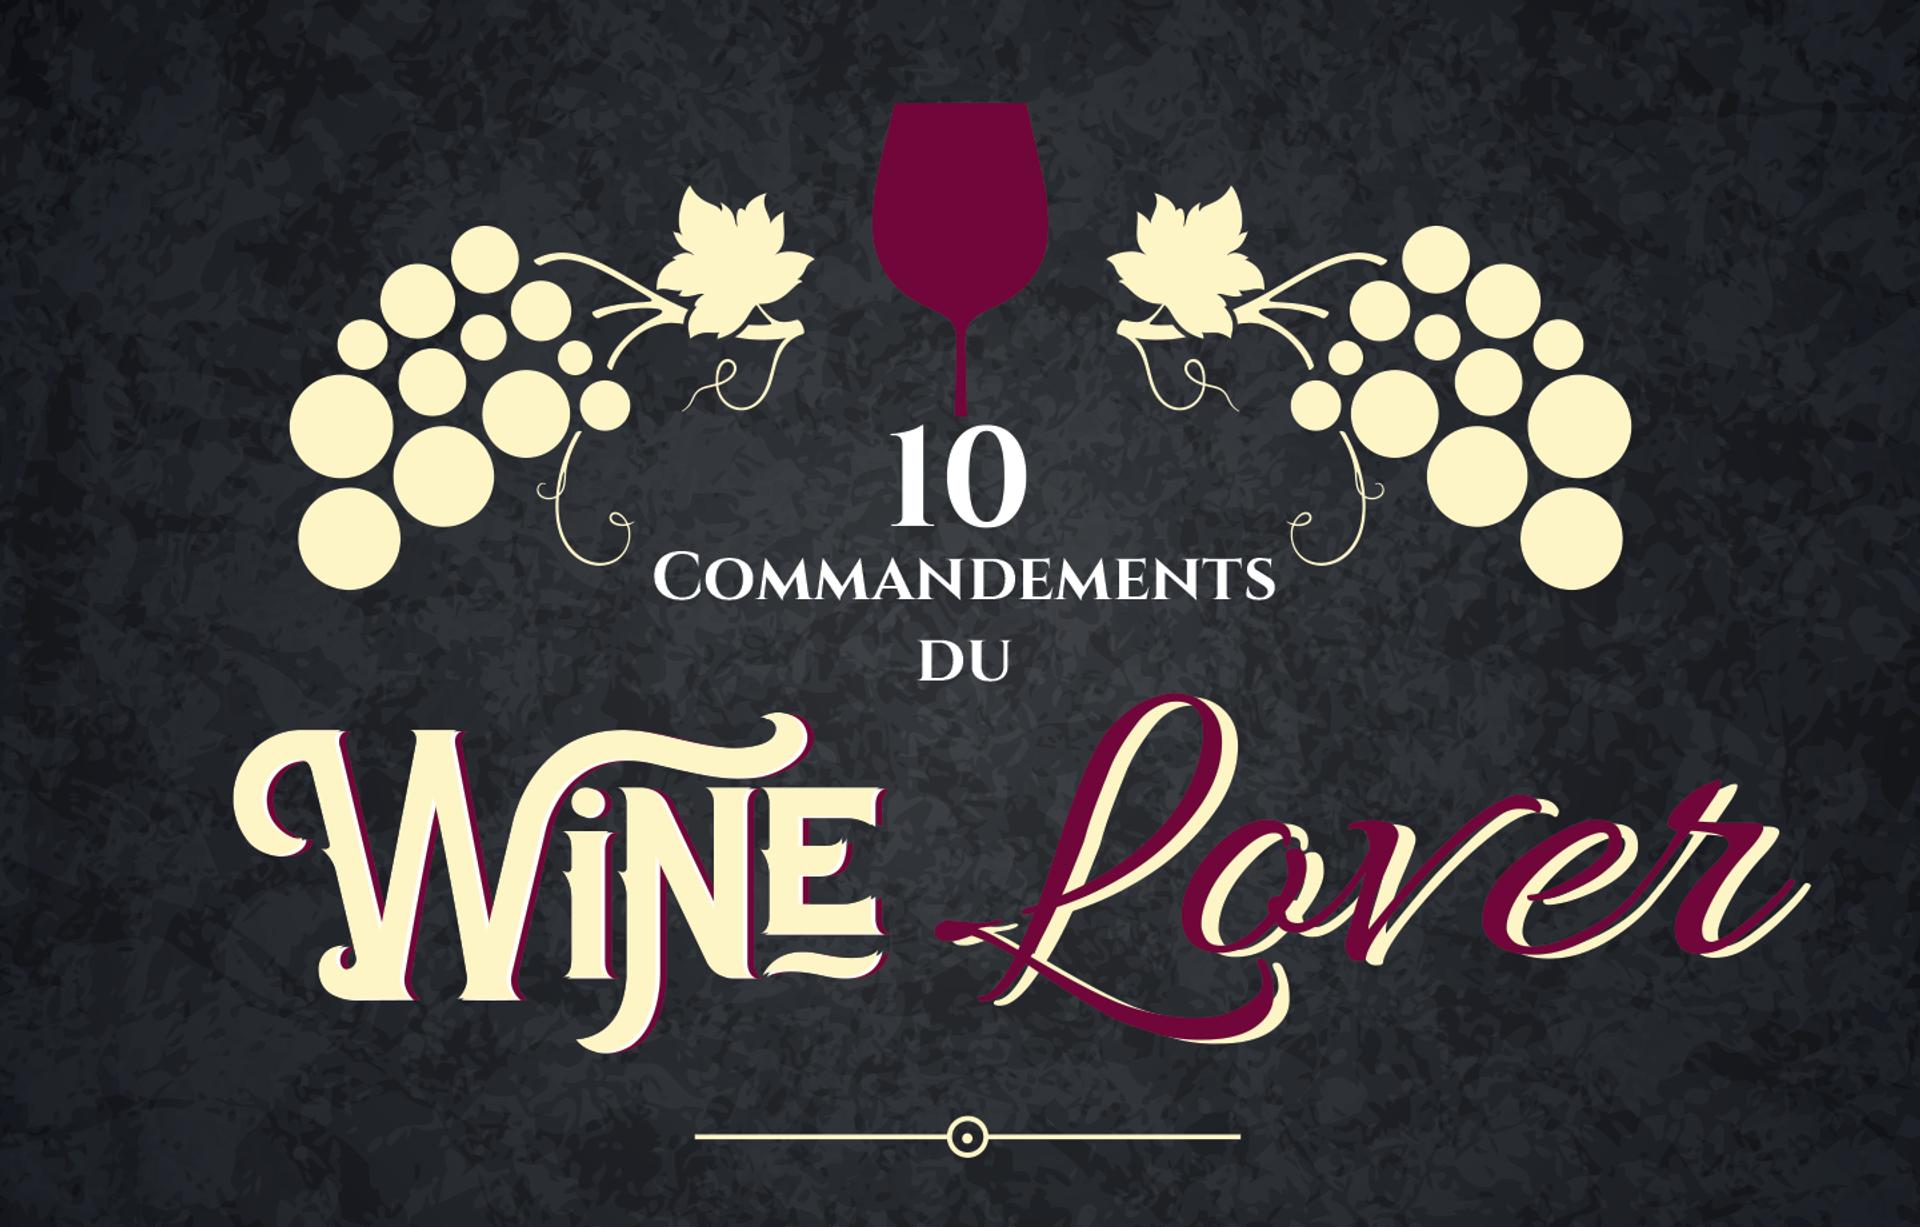 Les 10 commandements de la rentrée du winelover